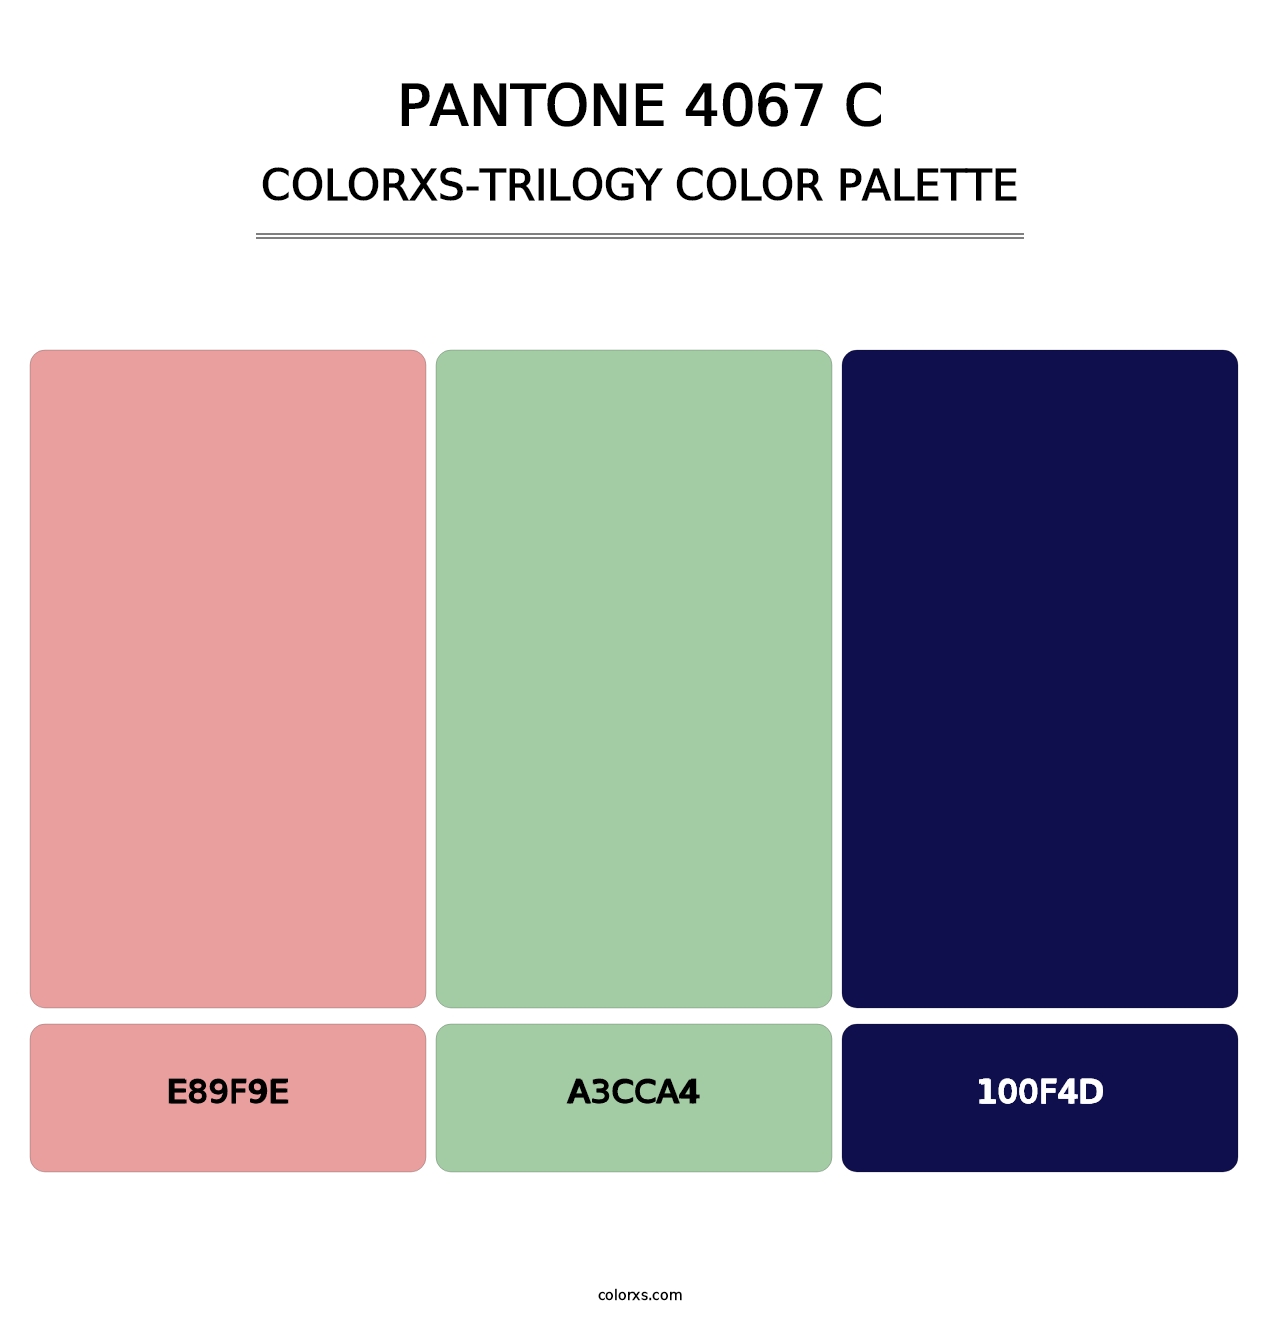 PANTONE 4067 C - Colorxs Trilogy Palette